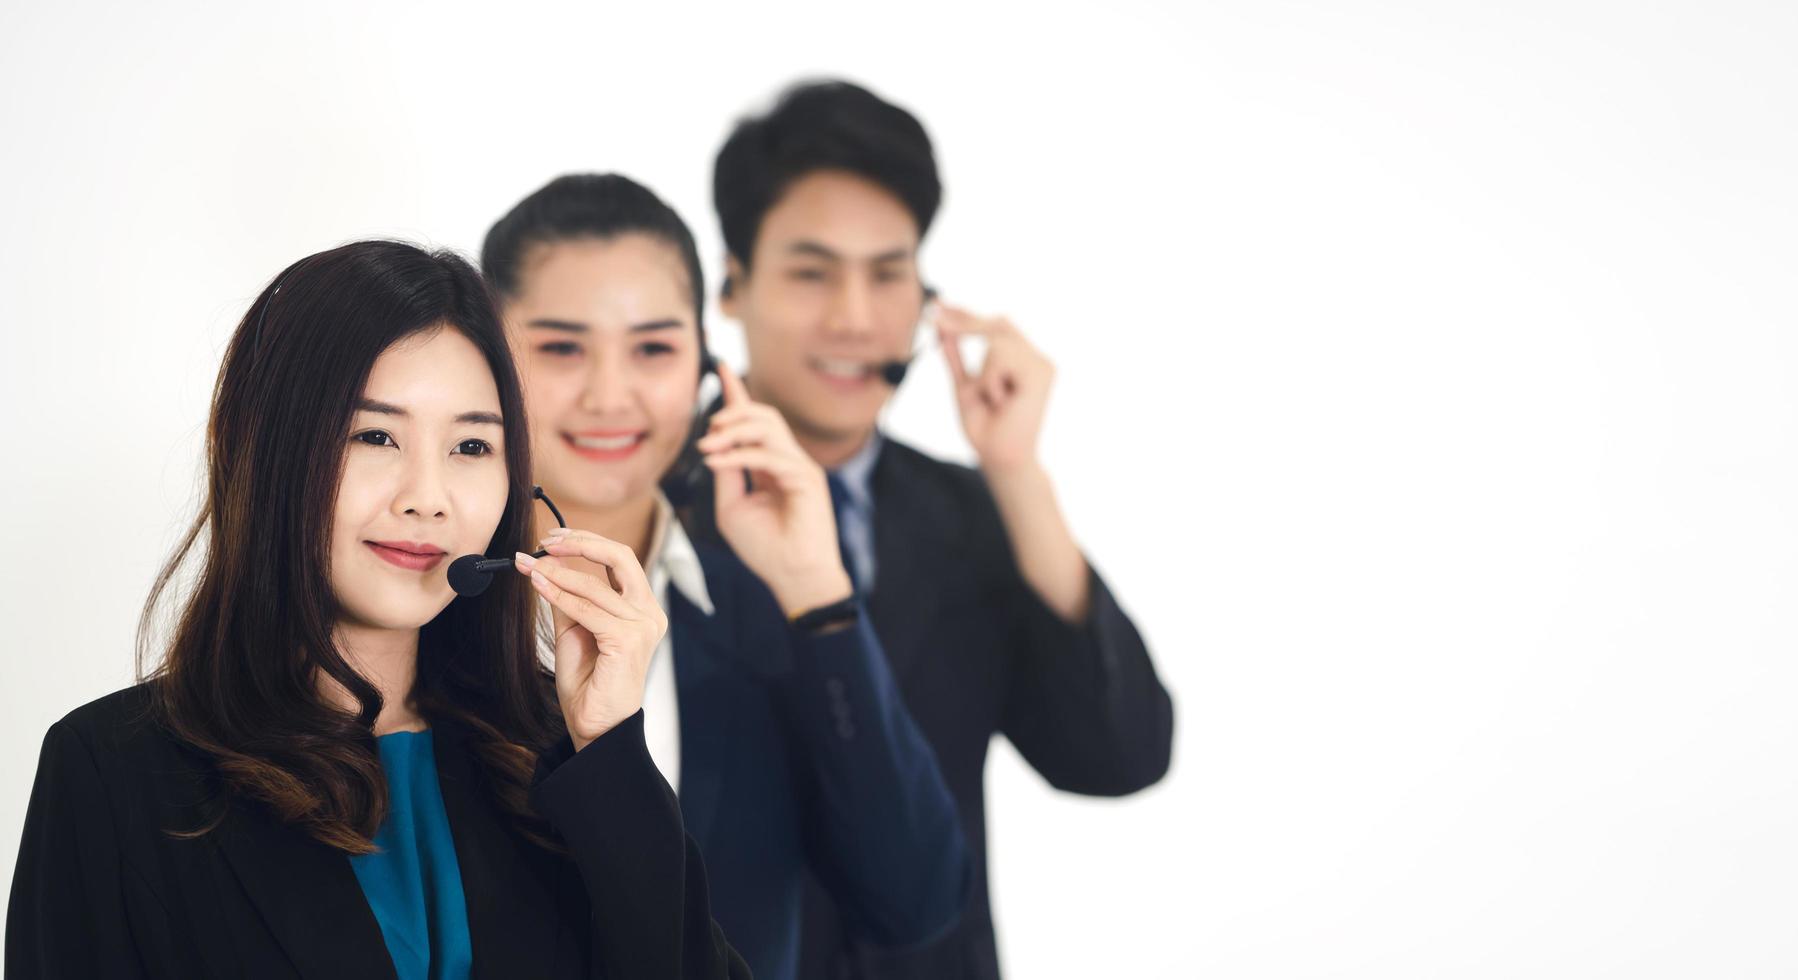 retrato de sonrisa positiva personal de negocios joven equipo de centro de llamadas asiático mujer y hombre foto